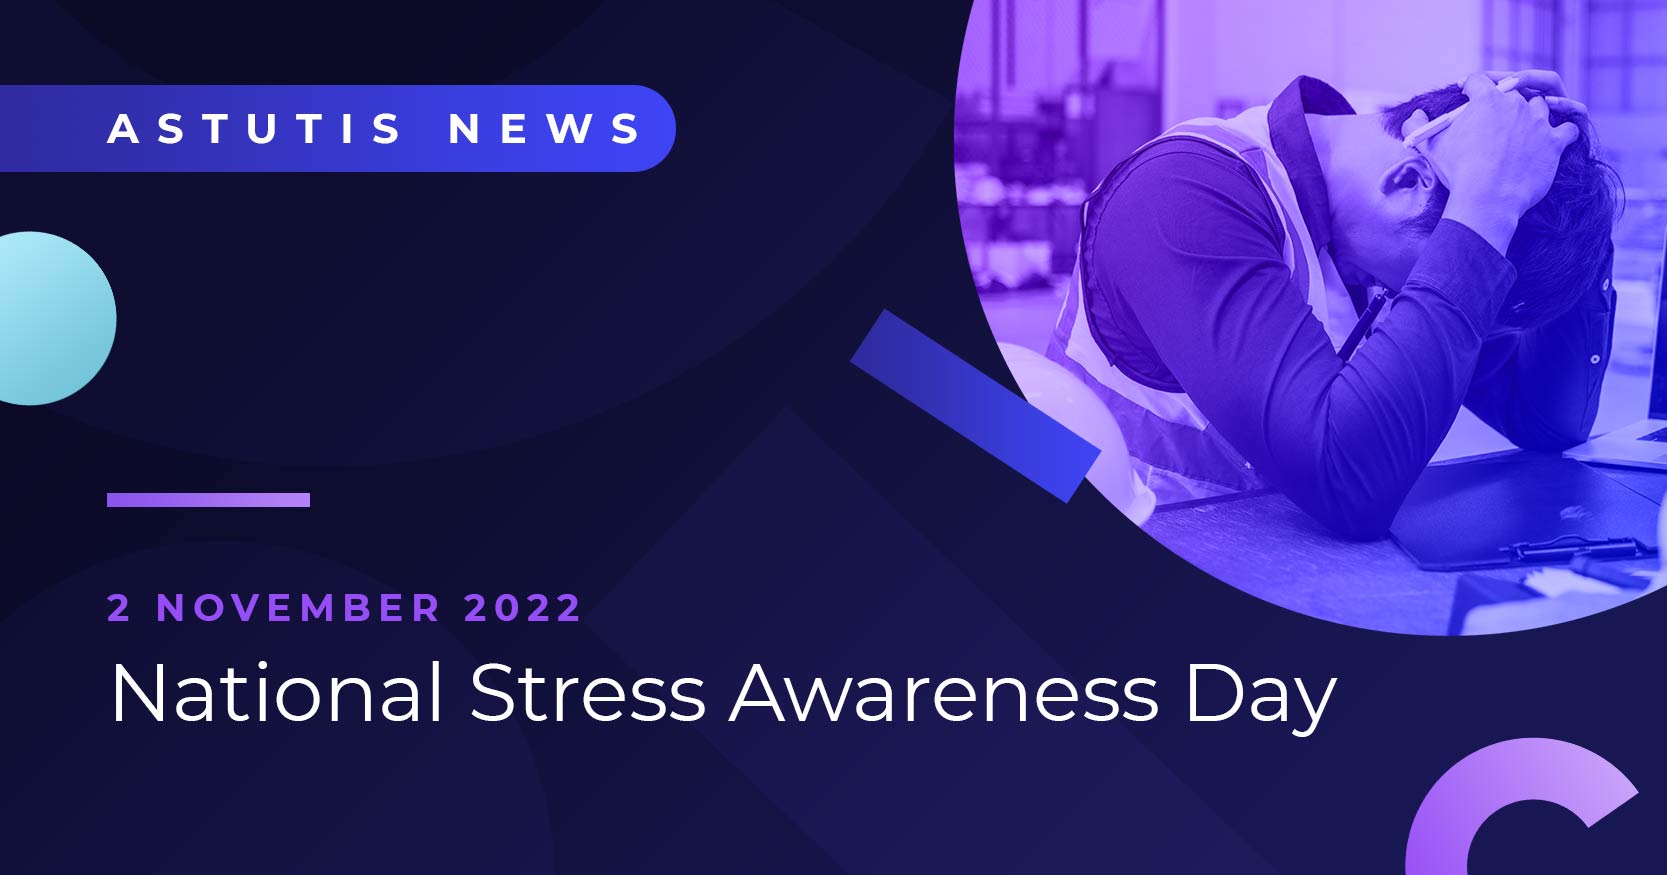 Combat stress with Astutis: National Stress Awareness Day 2022  Image